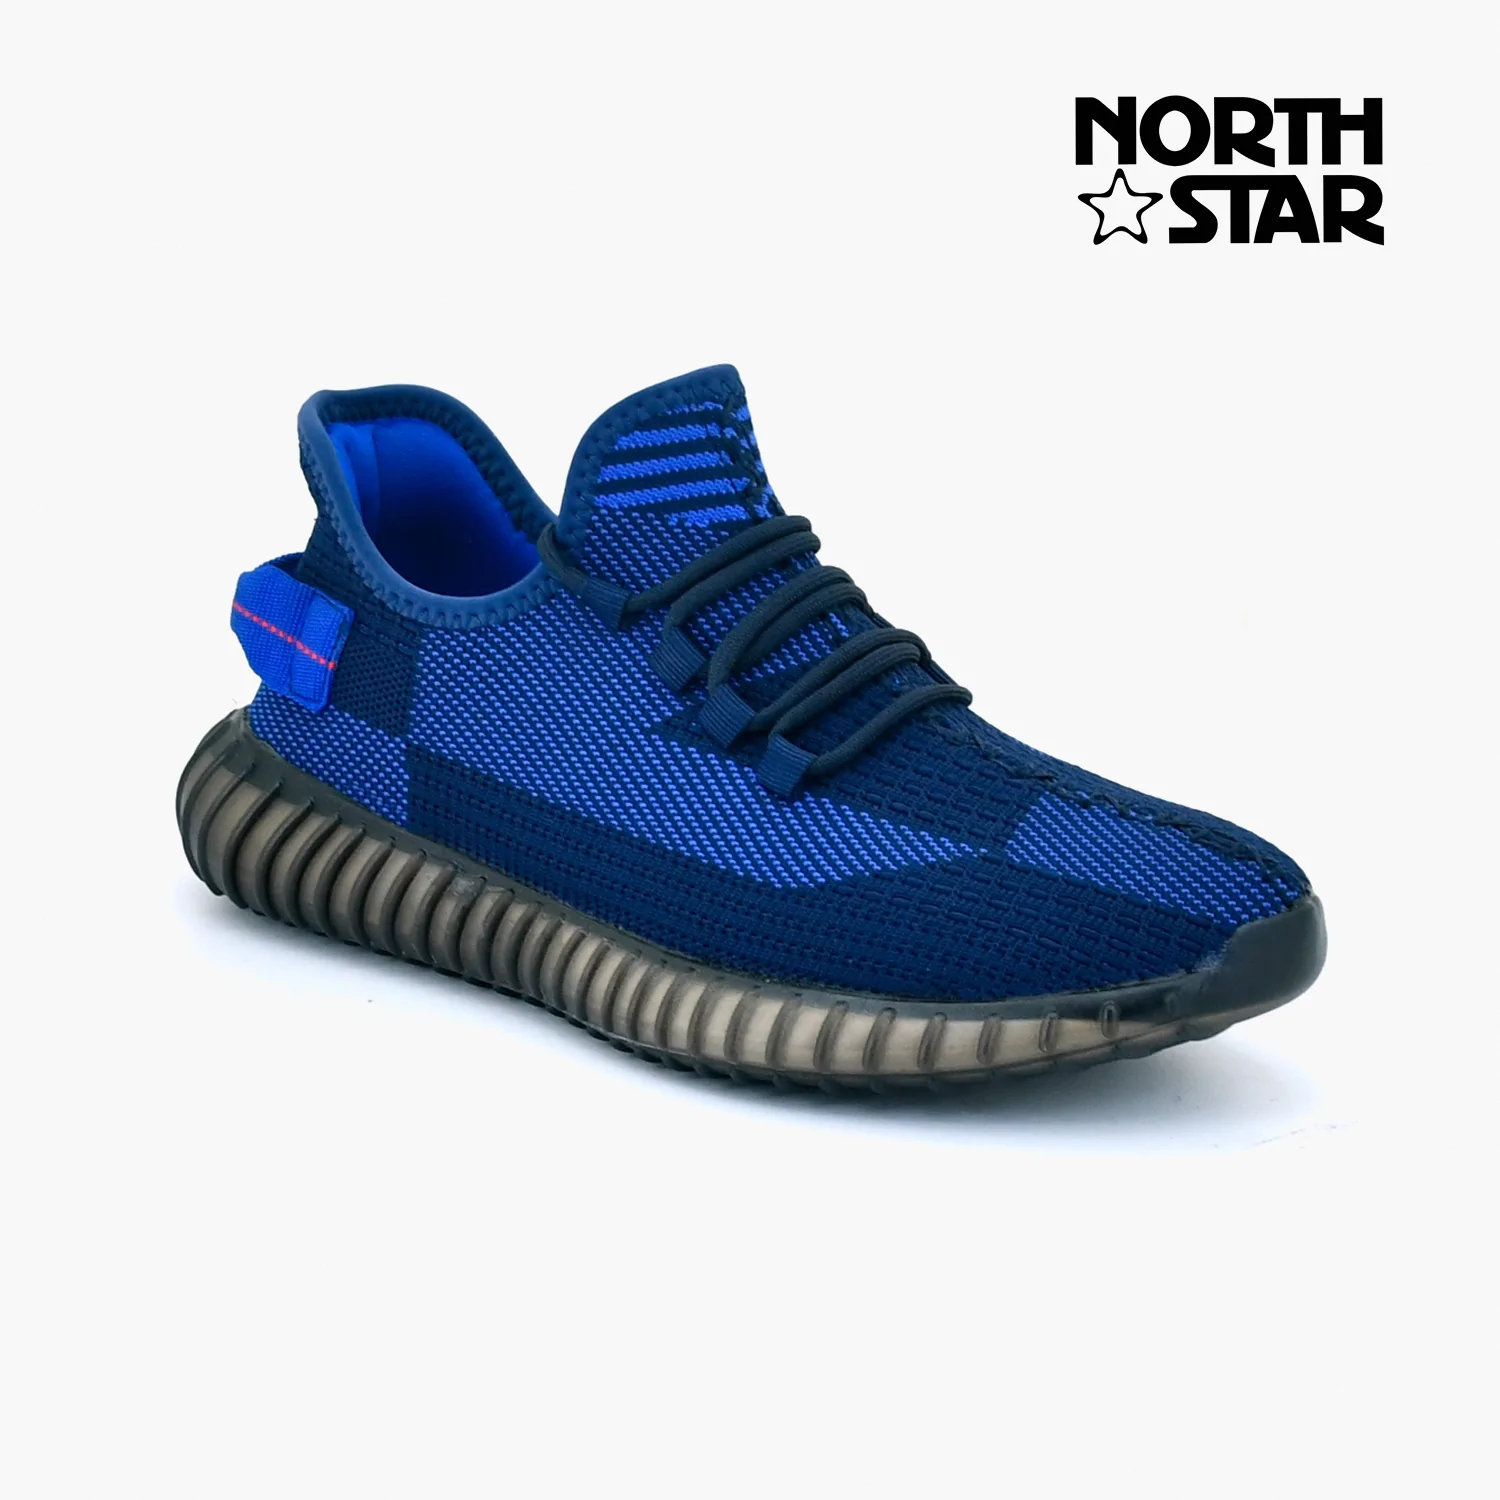 dark blue sneakers